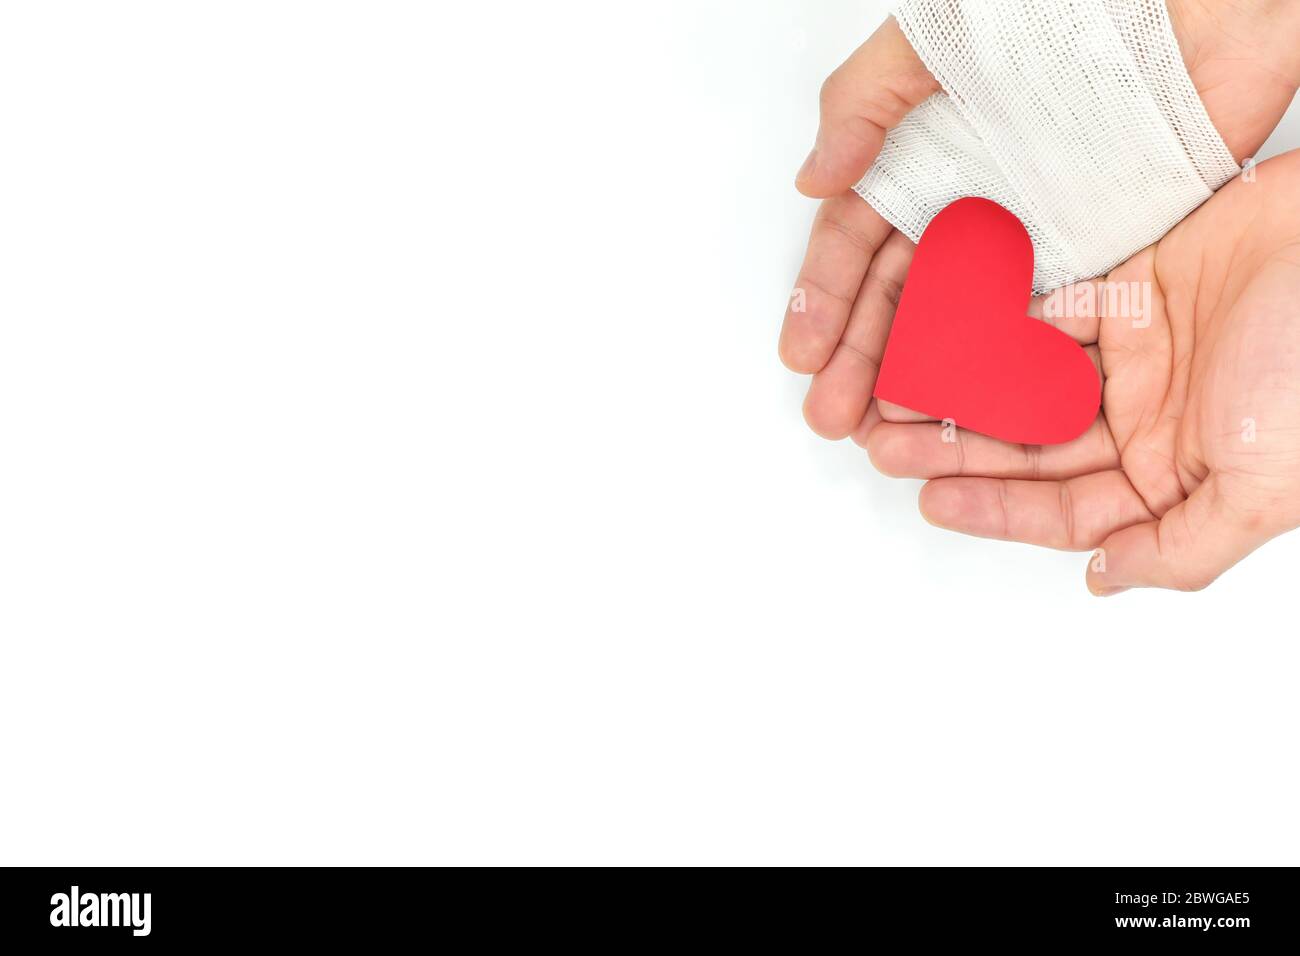 Eingekuppelte Hände mit Verband, der ein rotes Herz hält. Opfer, Organspende, Nächstenliebe und echte Liebe und Güte. Stockfoto